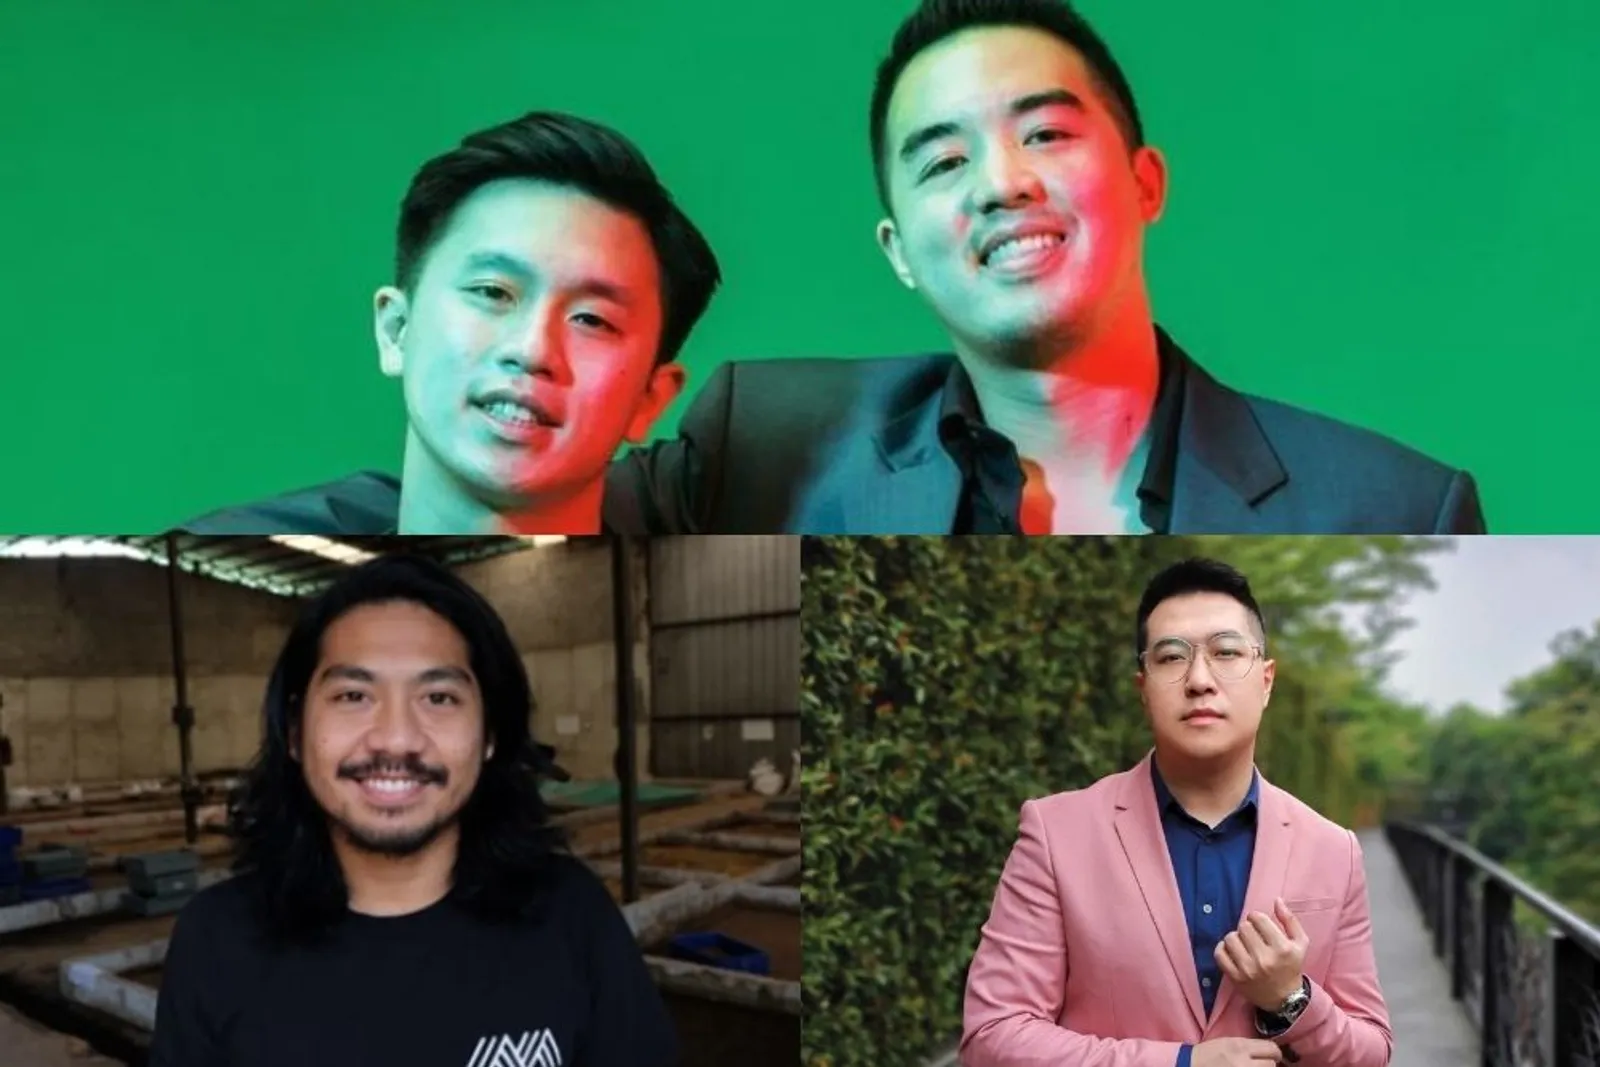 Inilah Profil Pemuda Indonesia Pilihan Forbes 30 Under 30 Tahun 2021